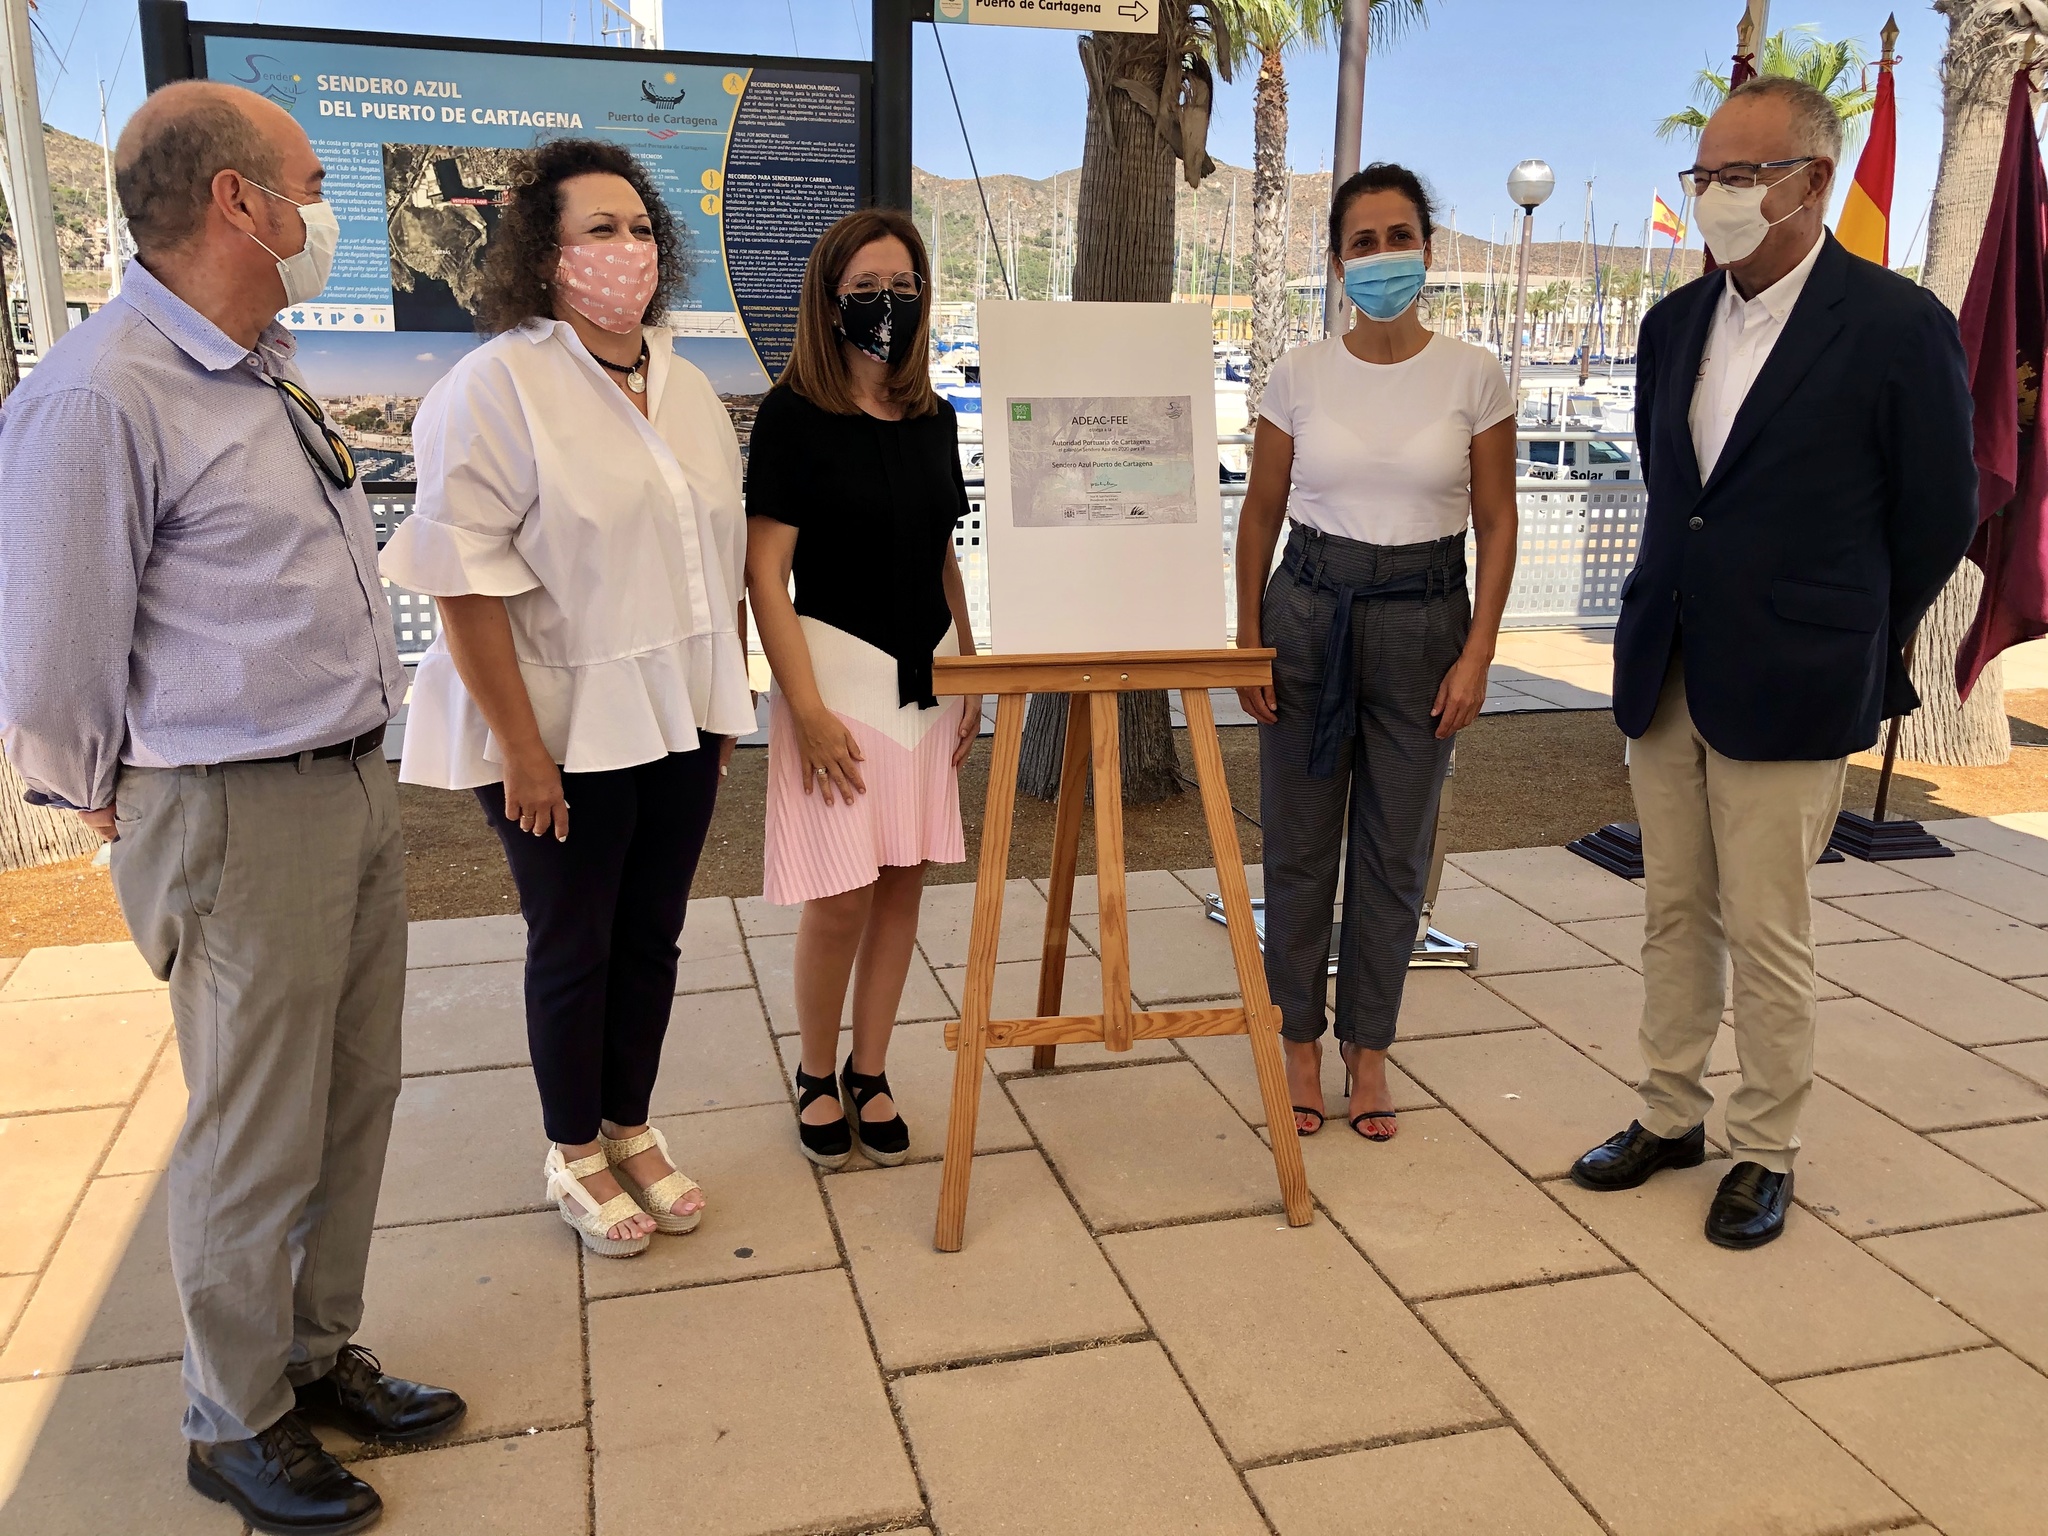 La consejera de Turismo, Juventud y Deportes en la presentación del Sendero Azul del Puerto de Cartagena